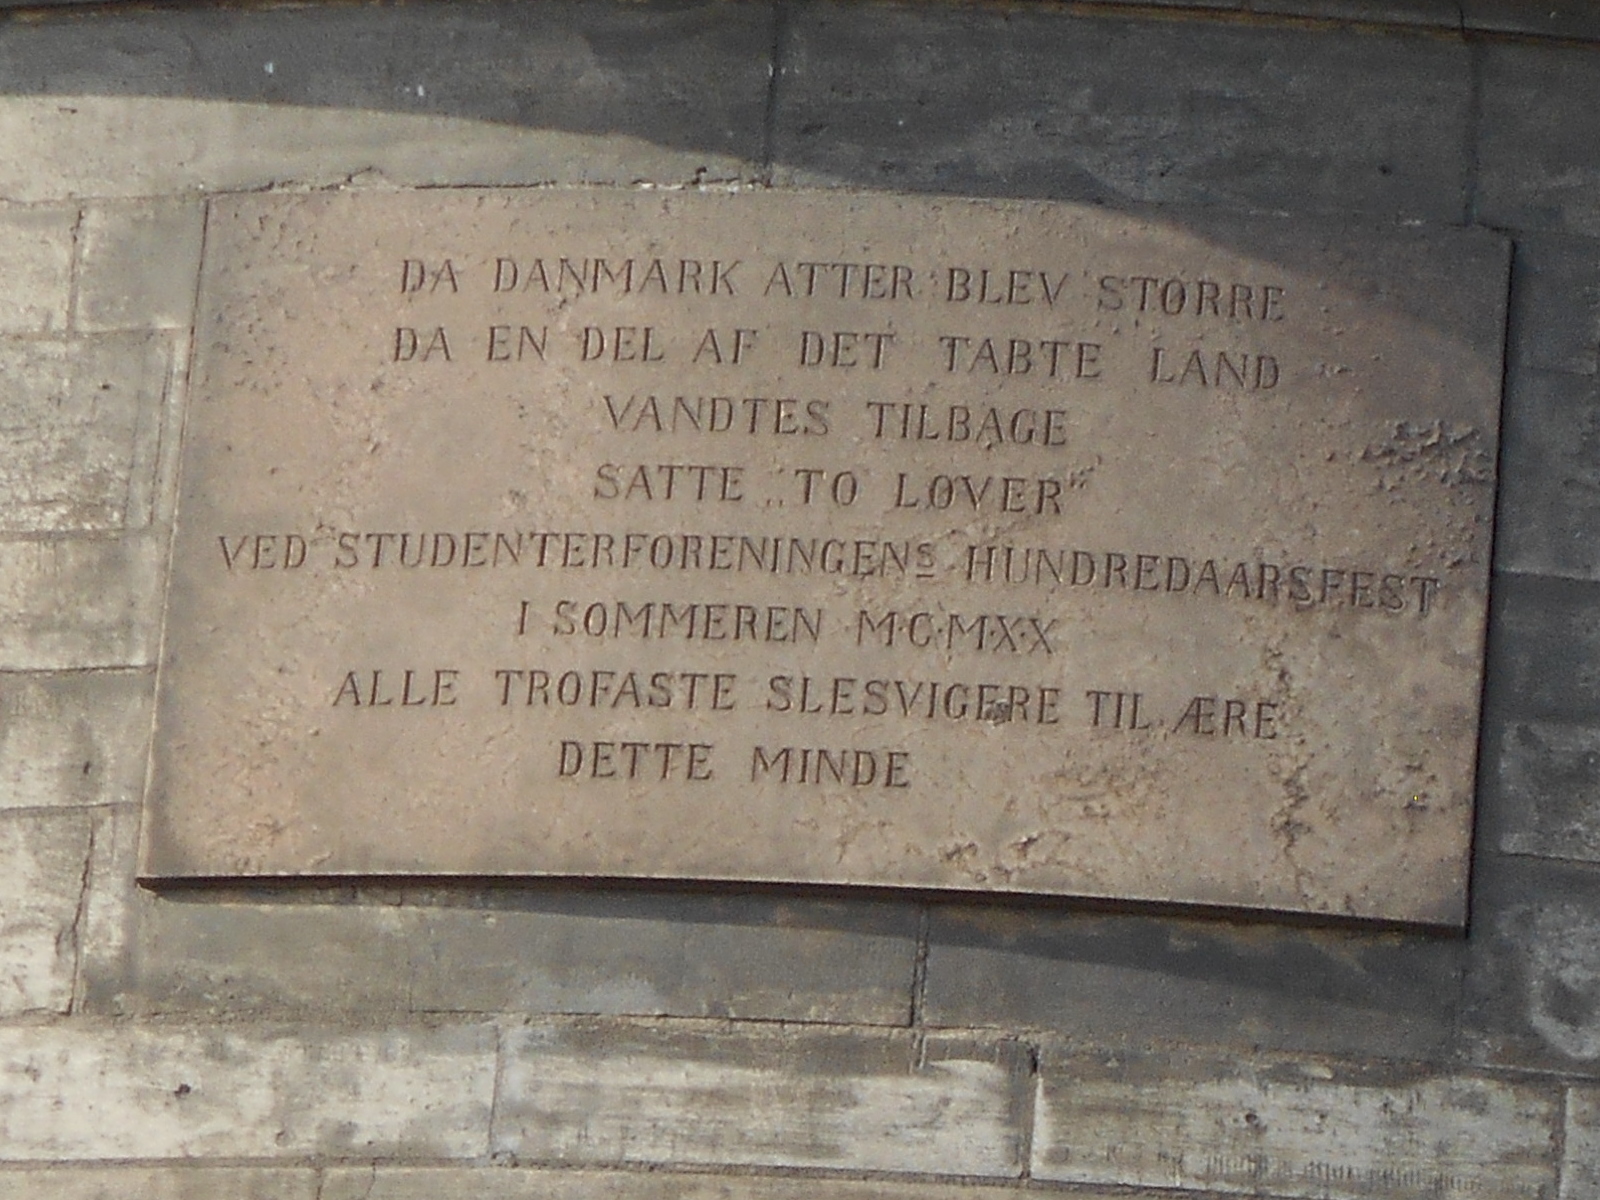 Mindetavle på den tidligere studenterforeningsbygning, Studiestræde 50, 1554  København V.